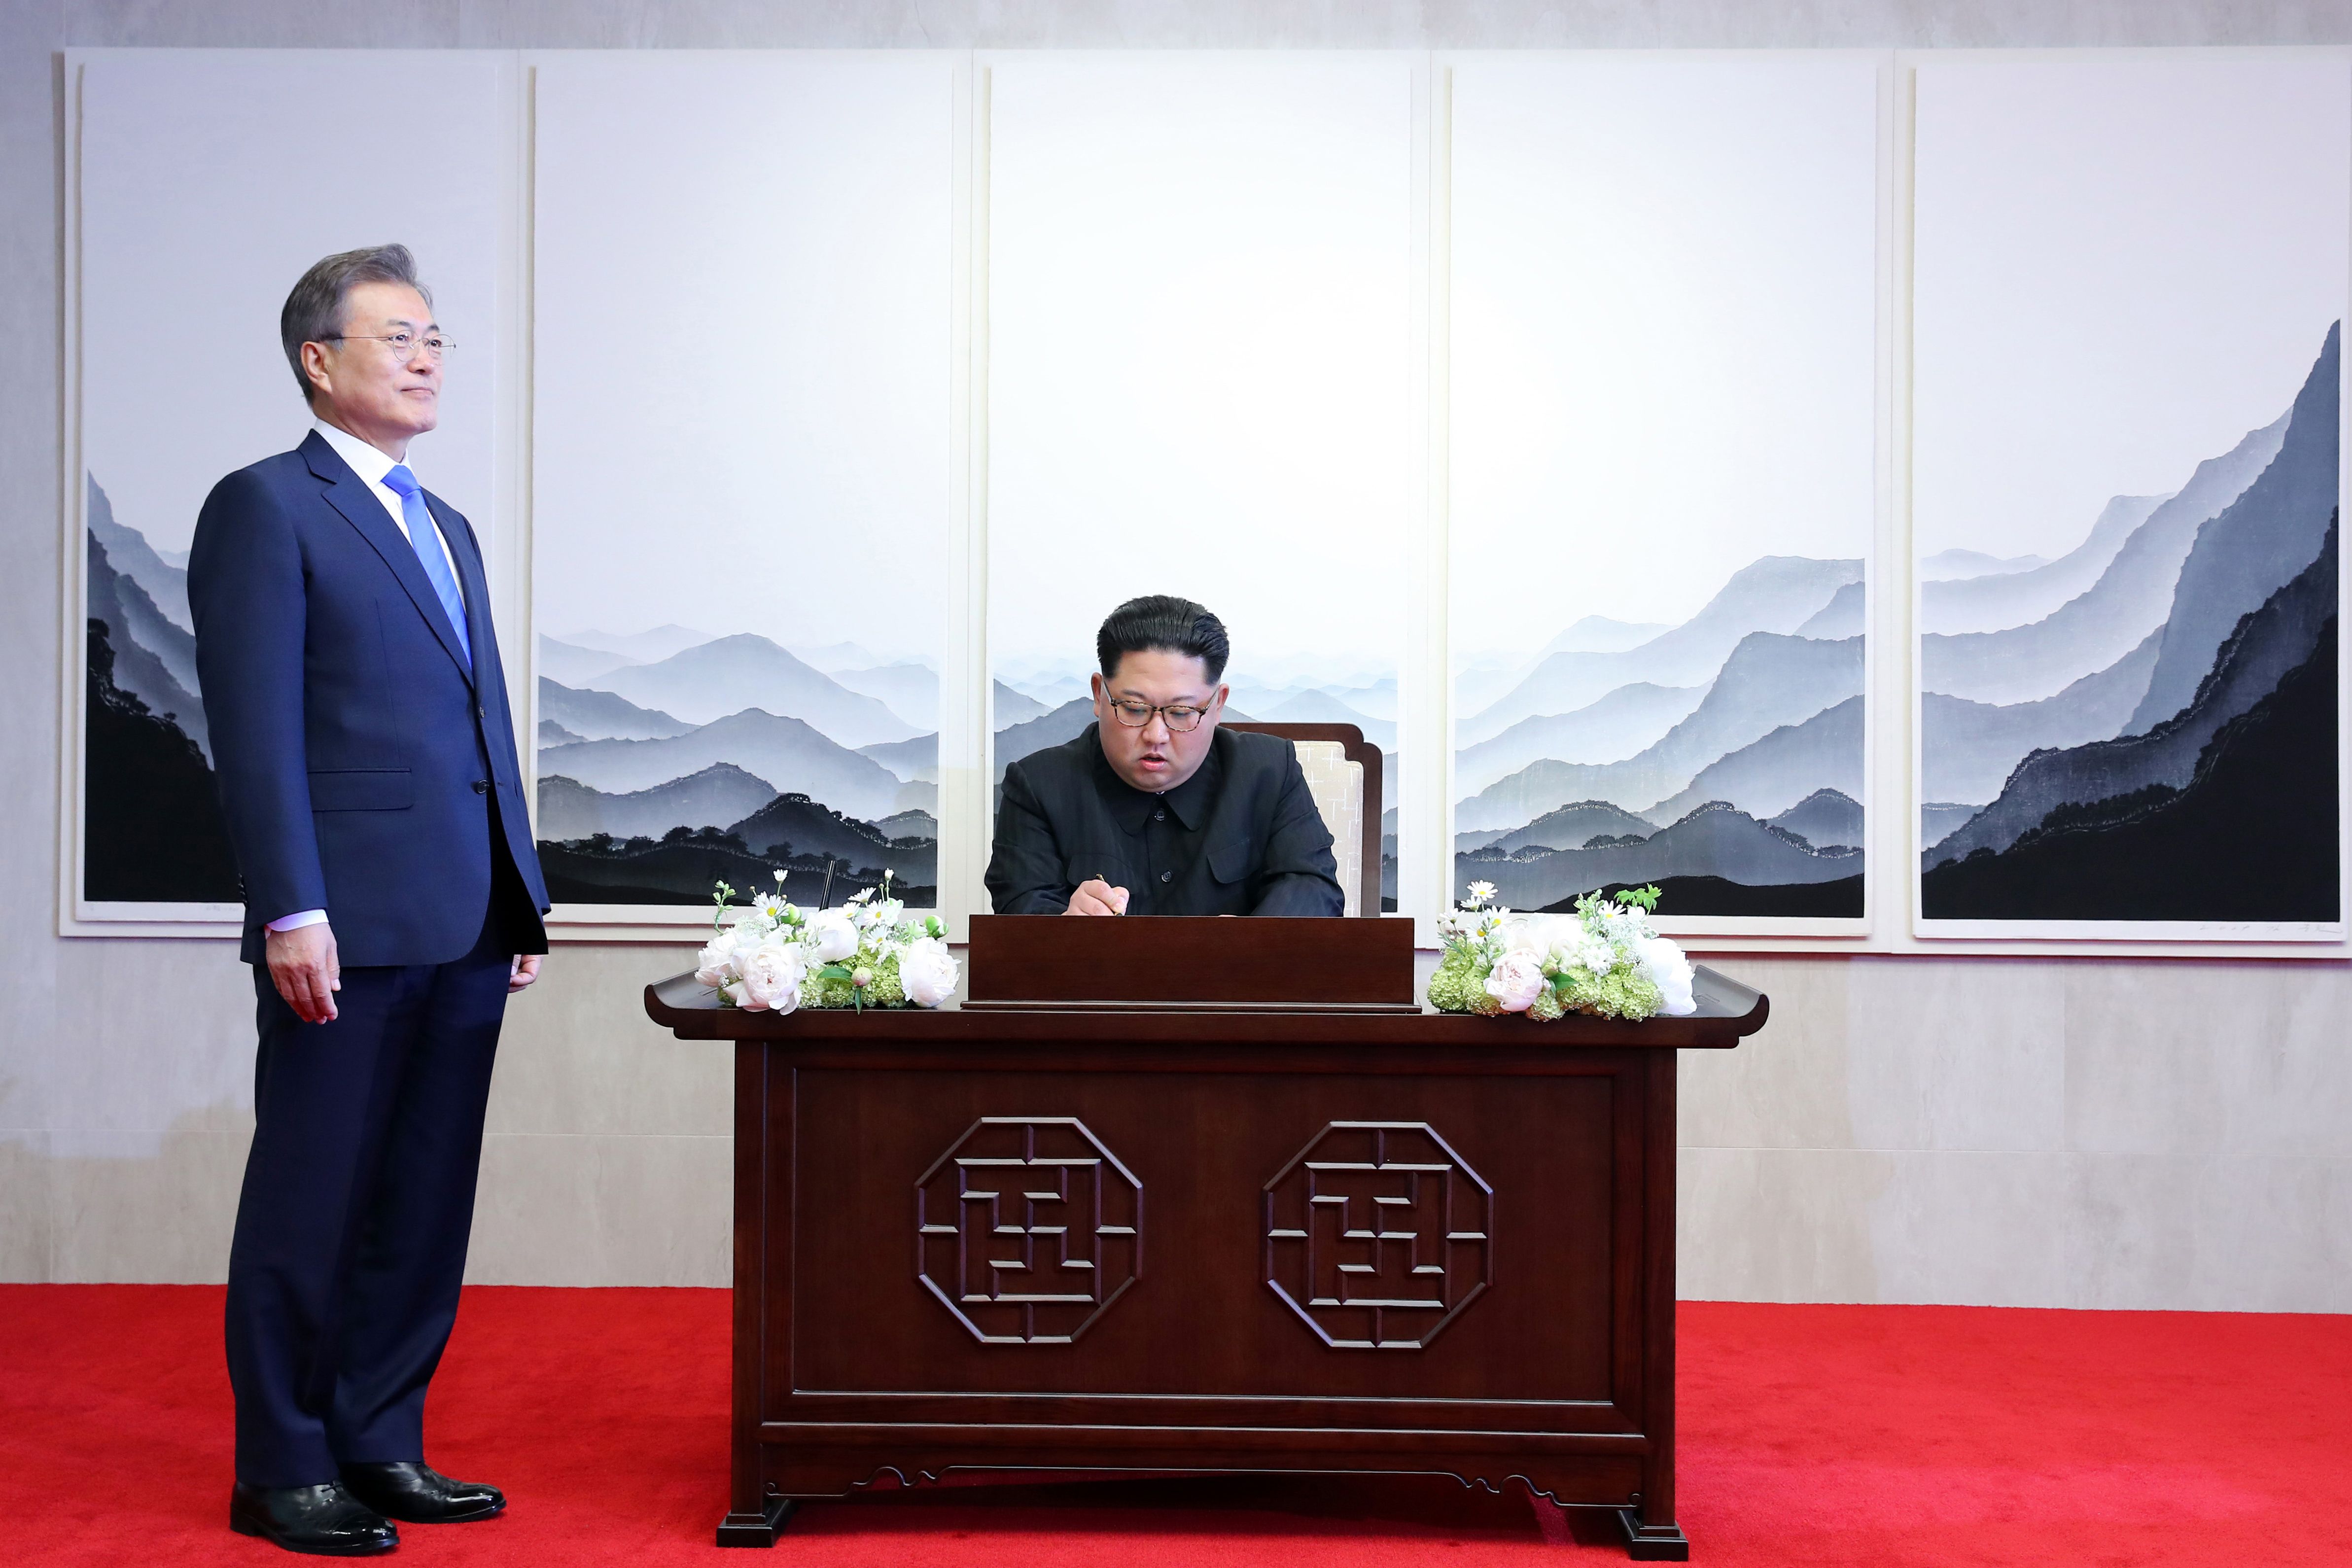 زعيم كوريا الشمالية يوقع فى دفتر زوار كوريا الجنوبية